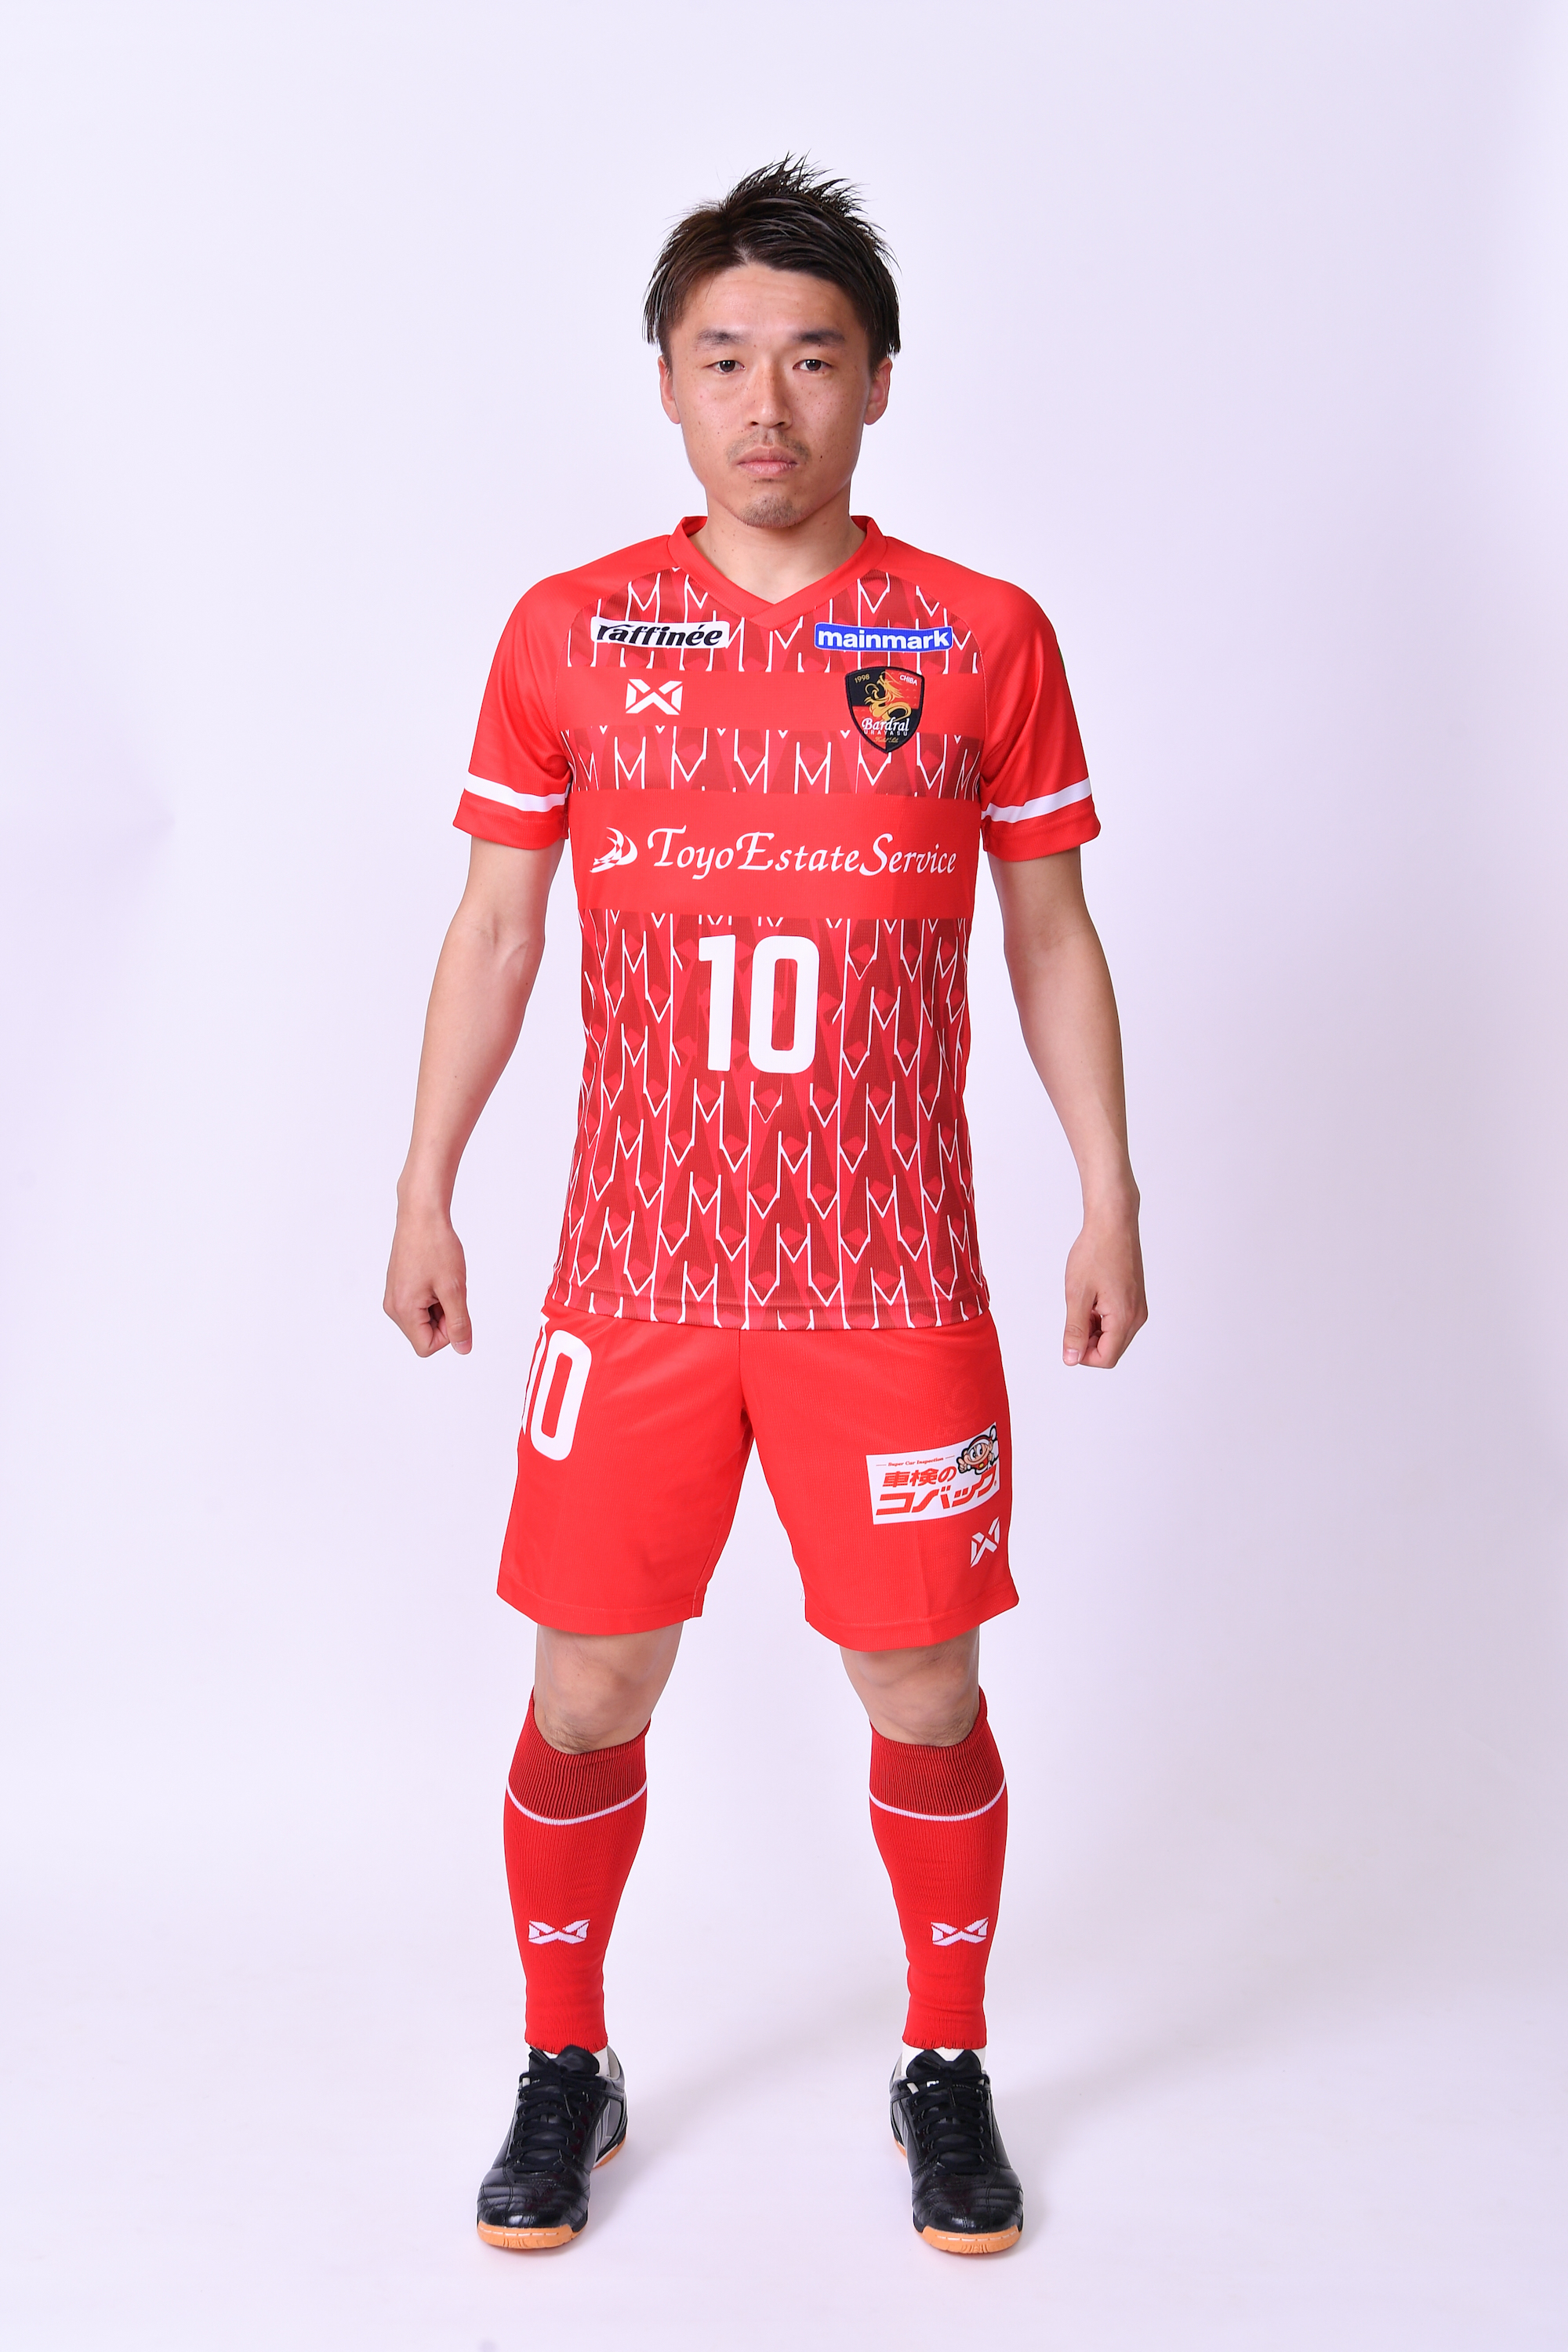 19 シーズン新ユニフォーム発売および予約受付のお知らせ バルドラール浦安 Bardral Urayasu Futbol Sala Official Website